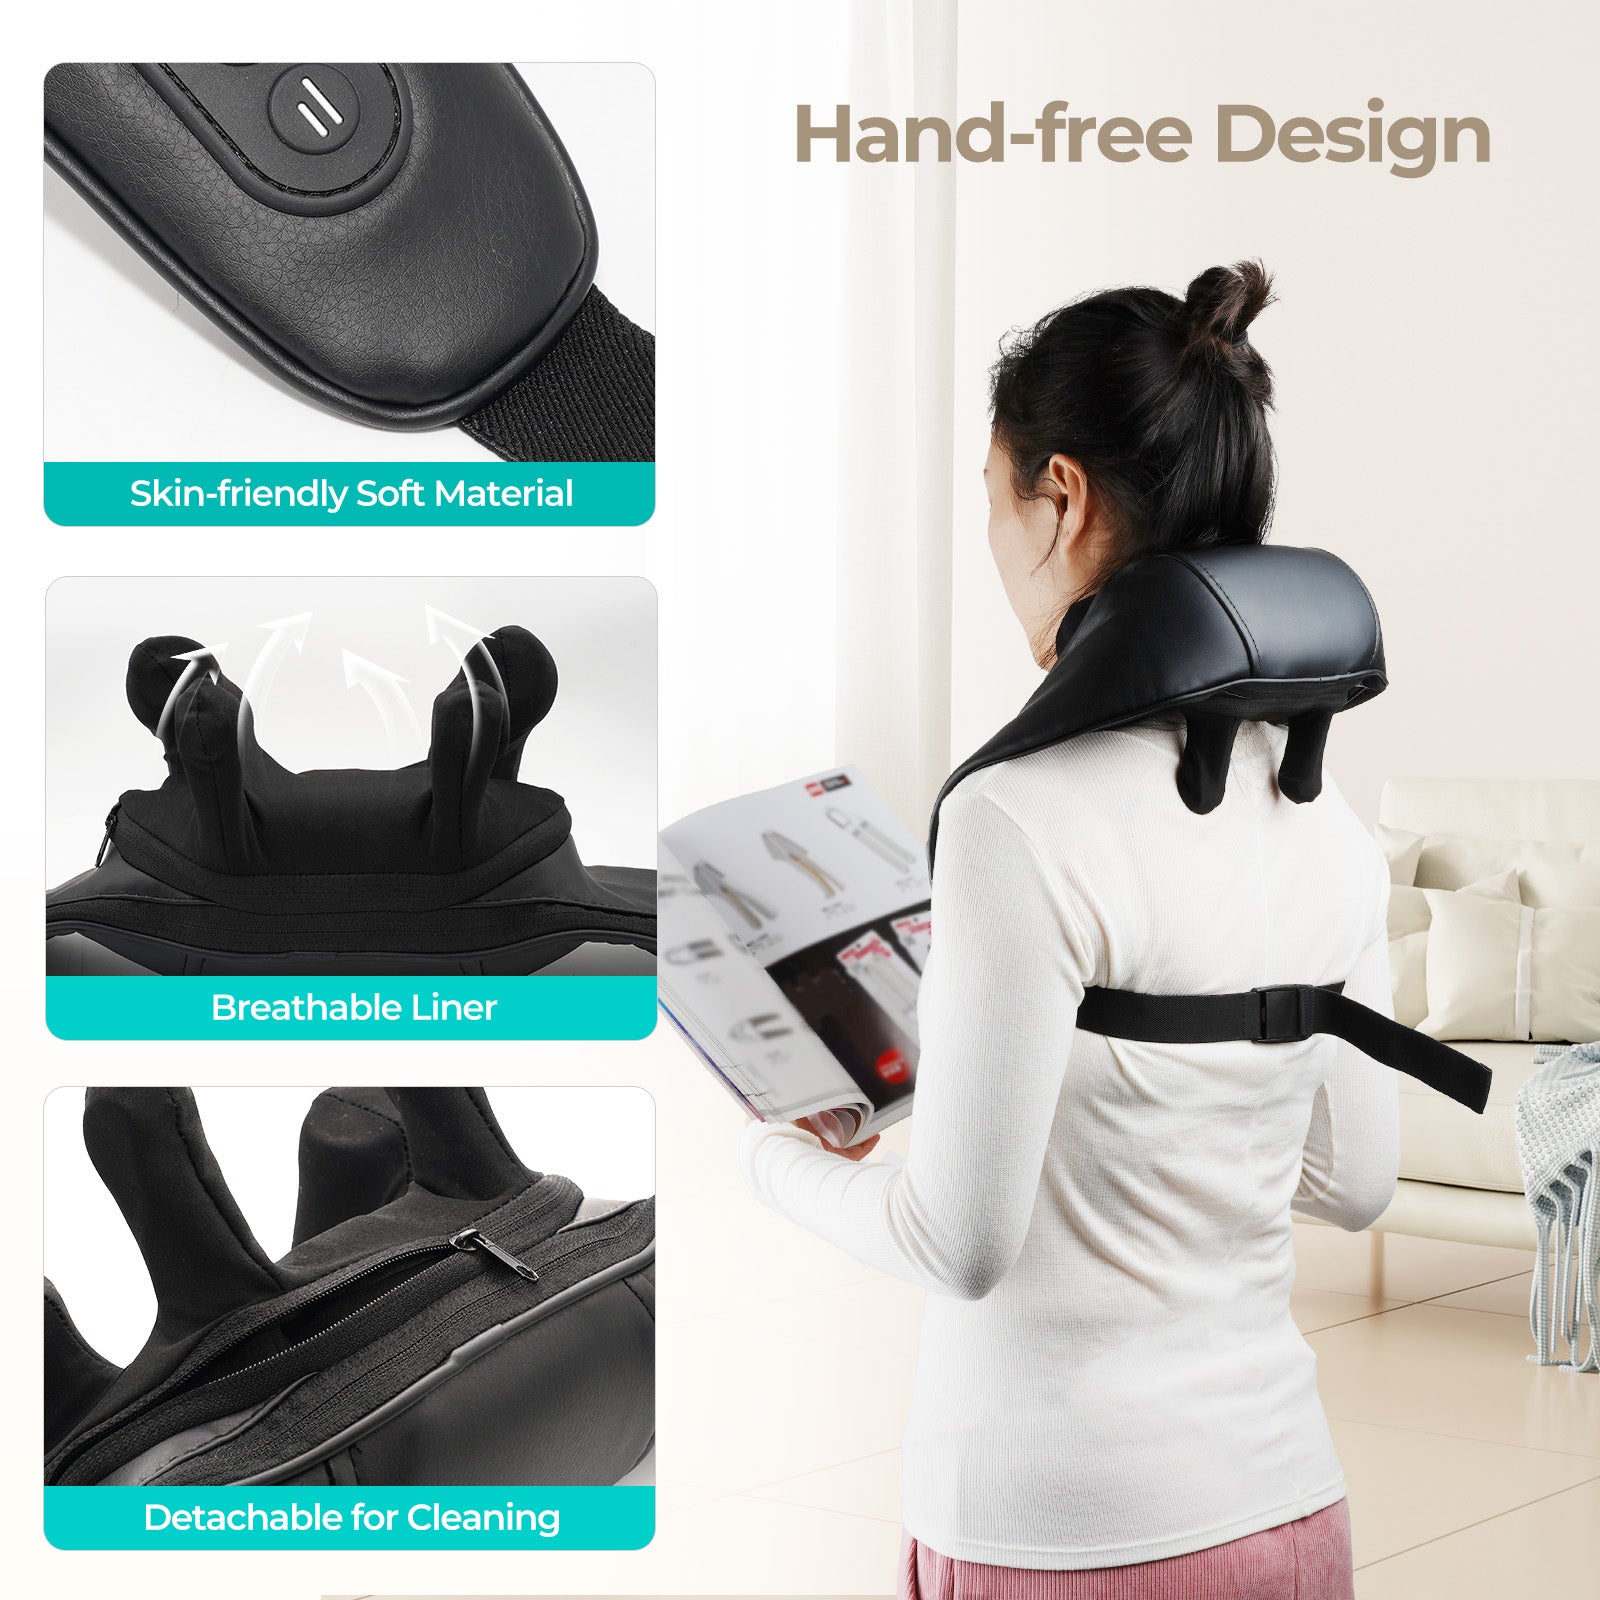 Aspria by NAIPO Masseur de cou Shiatsu 5D avec masseur d'épaule portable rechargeable à la chaleur pour massage du cou, des épaules, du dos, des jambes et de tout le corps, noir